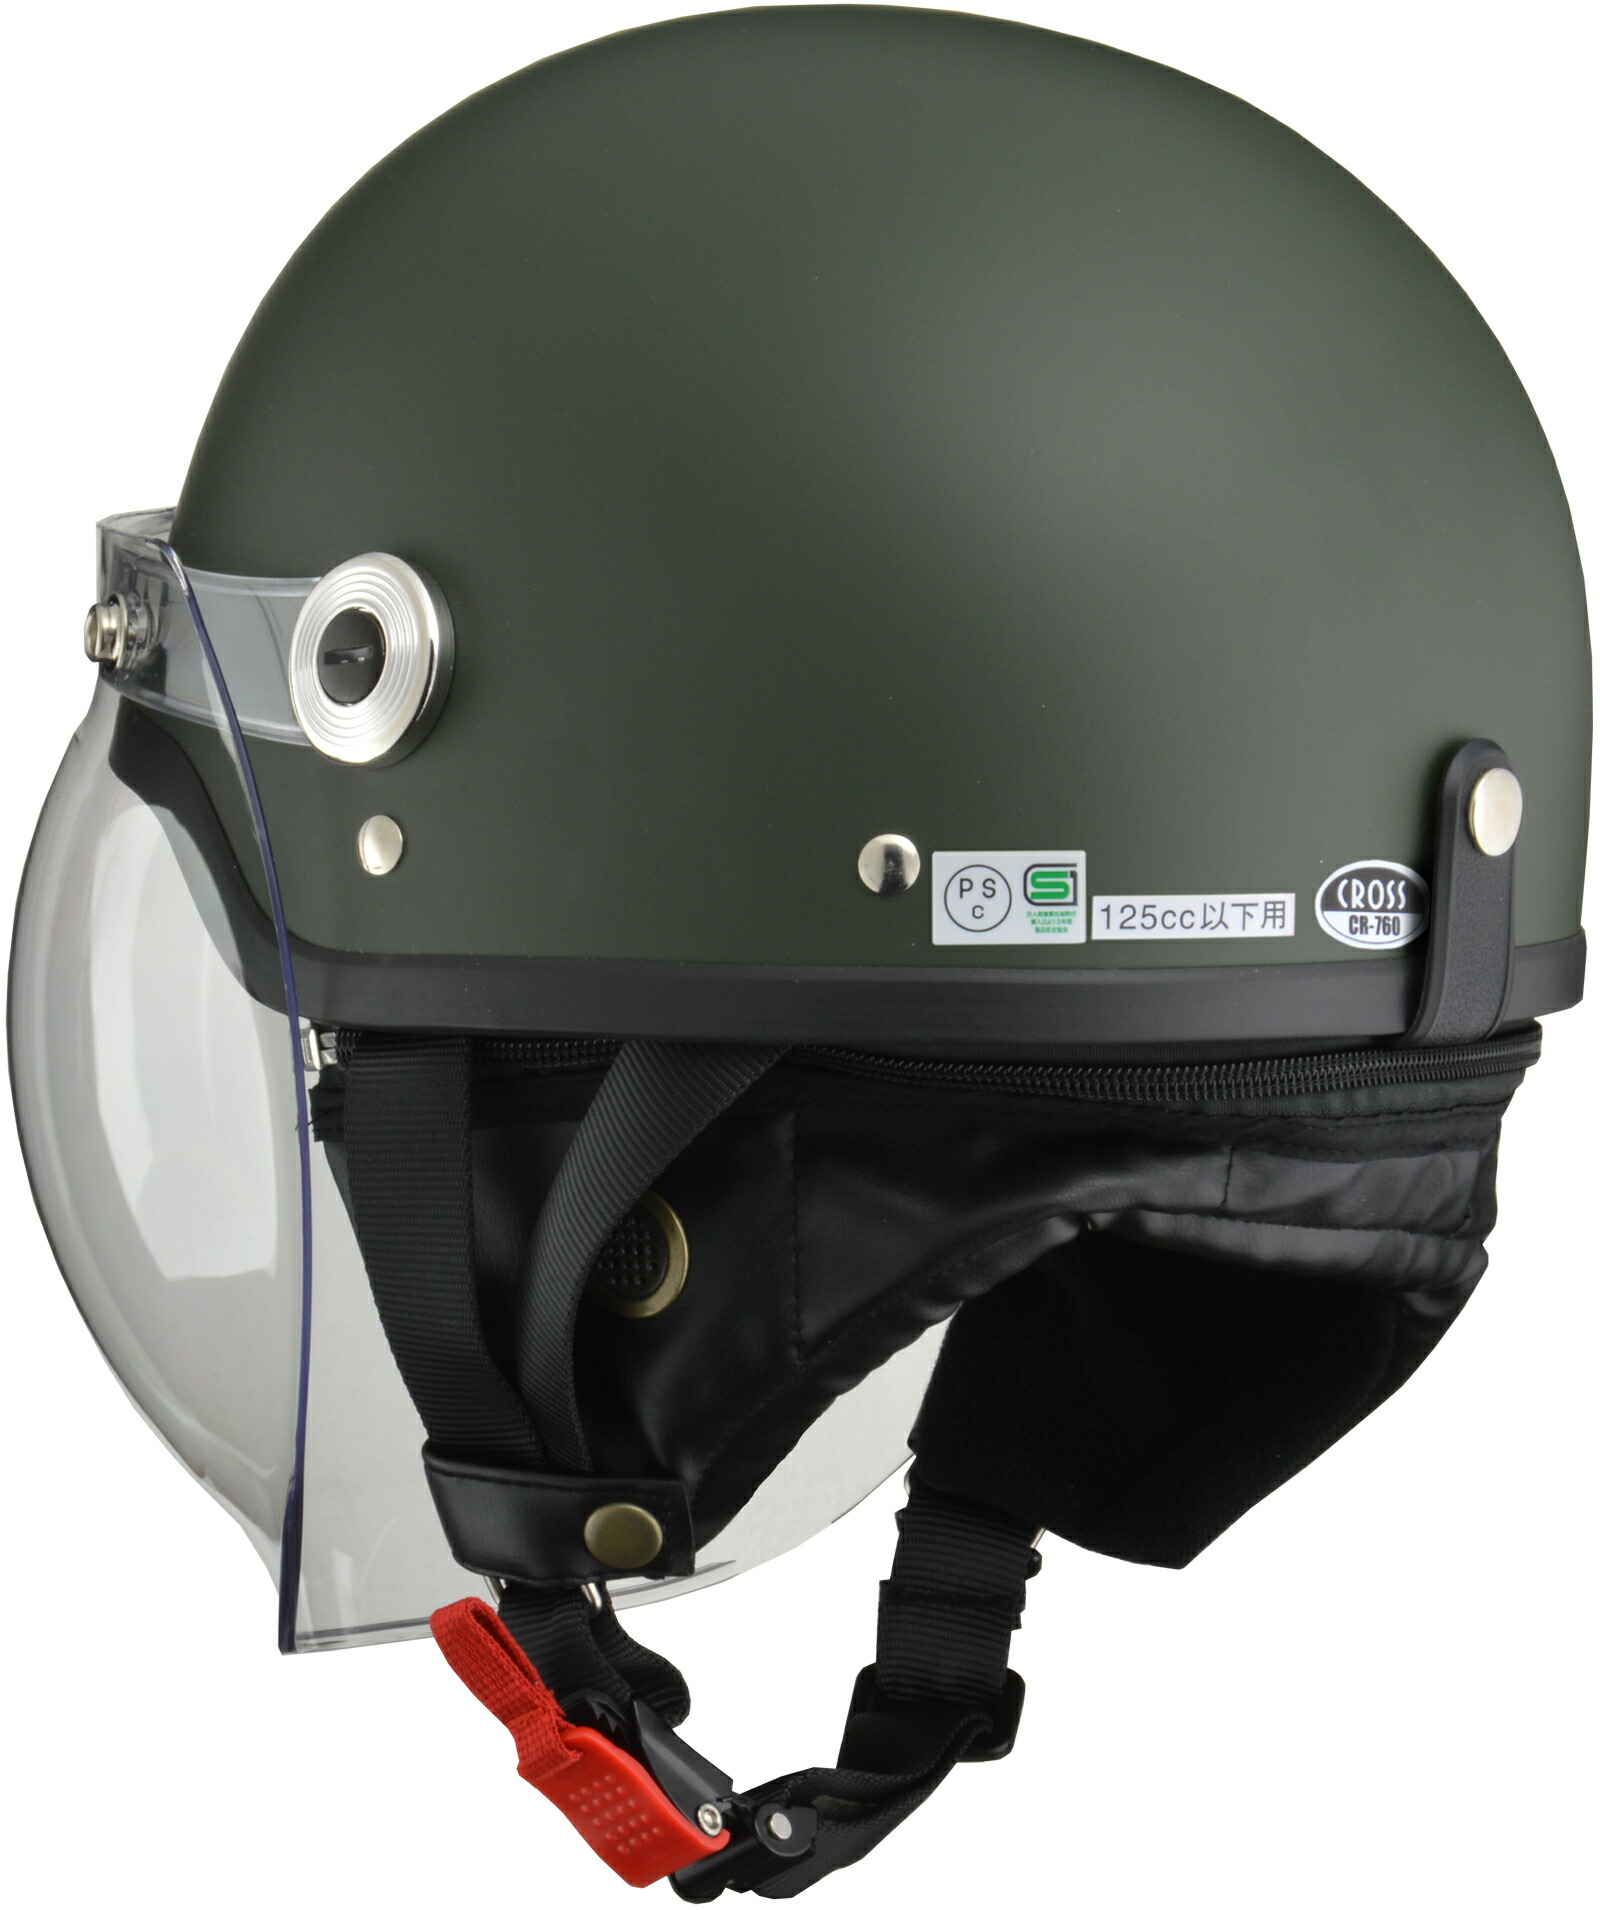  Lead промышленность (LEAD) для мотоцикла полушлем CROSS CR-760 коврик зеленый свободный размер (57-60cm не достиг )